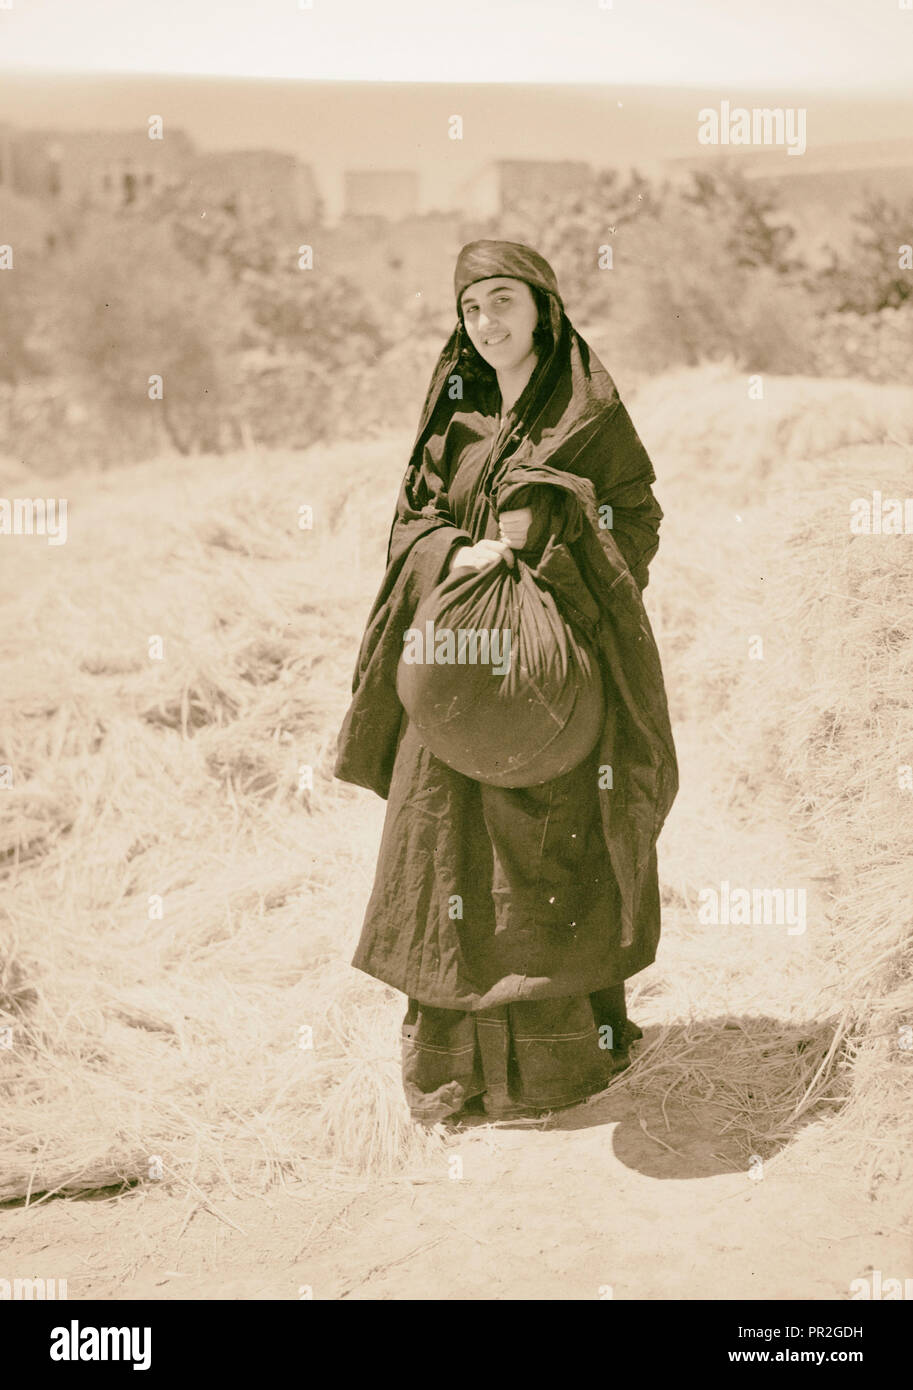 Ruth Geschichte. 'Ruth' aus, die Weizen durch "gemessene Boas' (Sirvart). 1940, im Nahen Osten, Israel und/oder Palästina Stockfoto